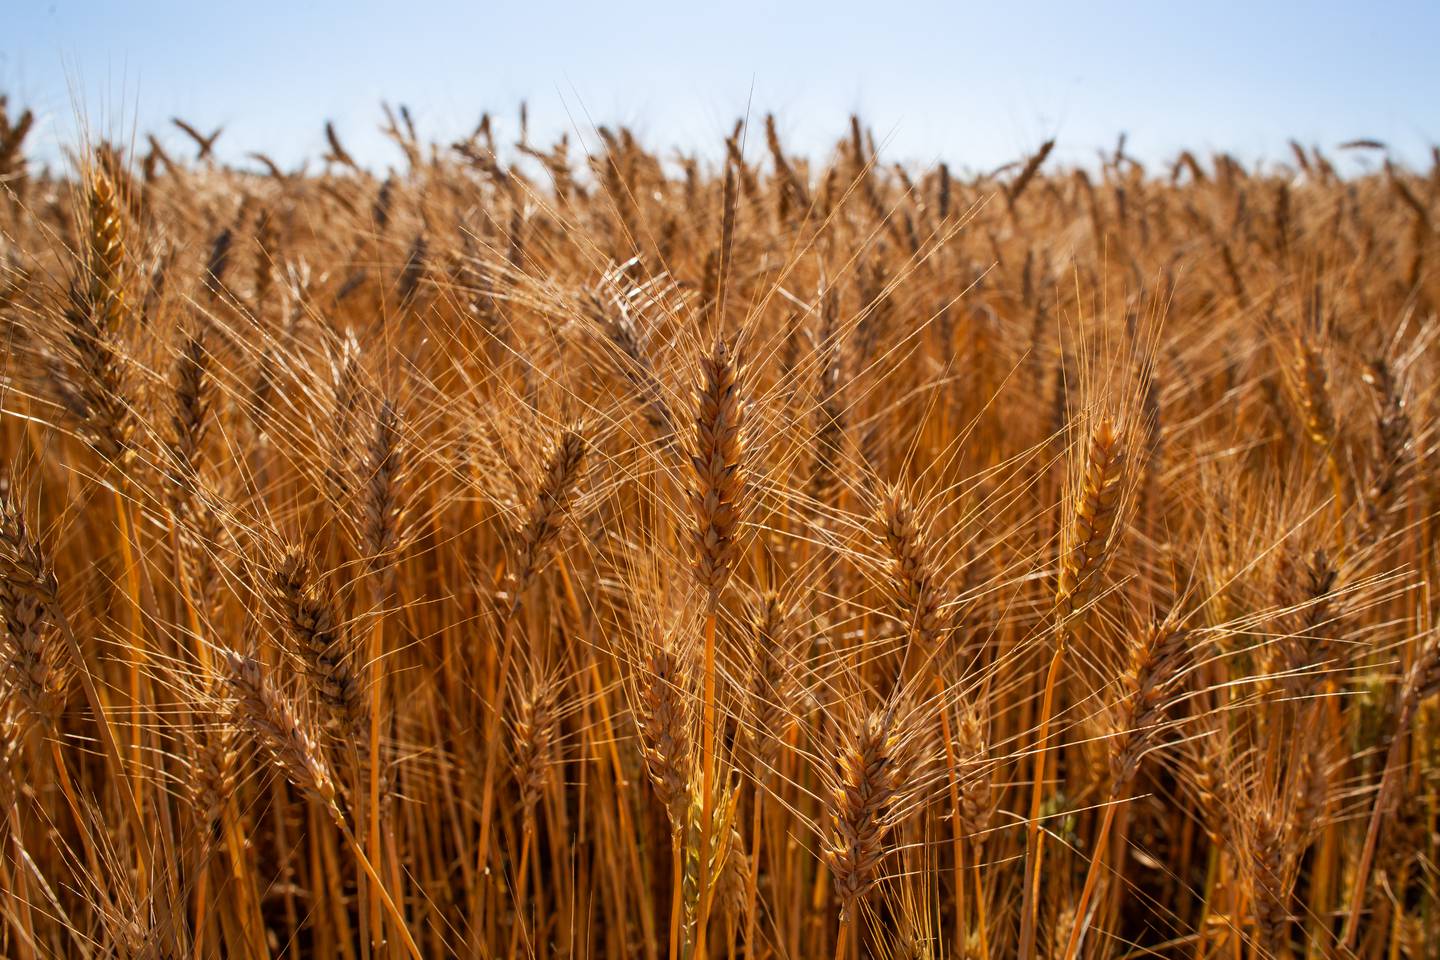 El Gobierno brasilero decidirá si libera o no la comercialización del trigo genéticamente modificado.